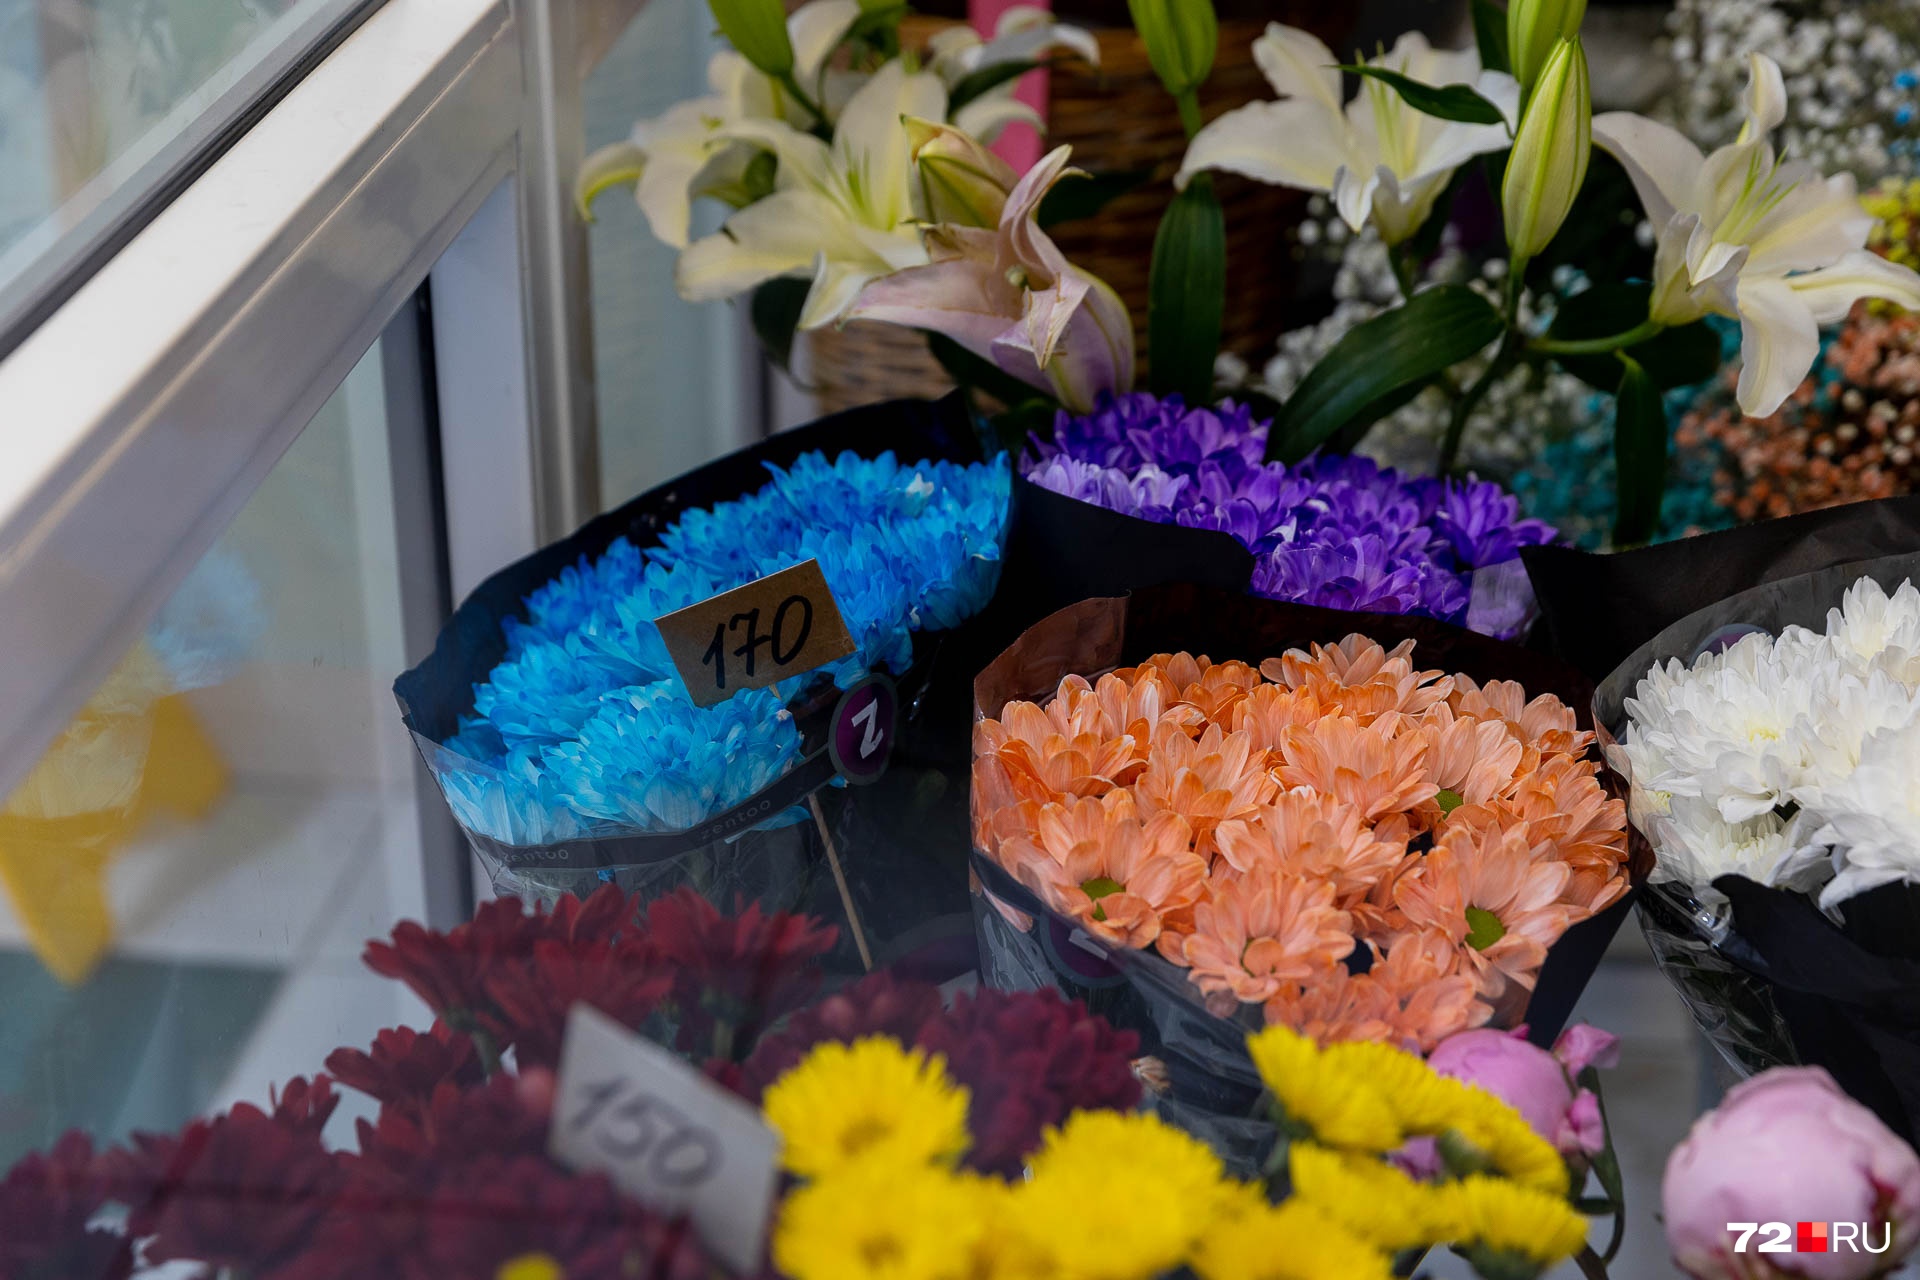 В обычных цветочных тоже есть пионы. Их цена выше, чем у уличных торговцев, — от 200 до 250 рублей за цветок. Говорят, что из цветочных салонов пионы простоят дольше. В продаже есть и розовые, и желтые, и бордовые